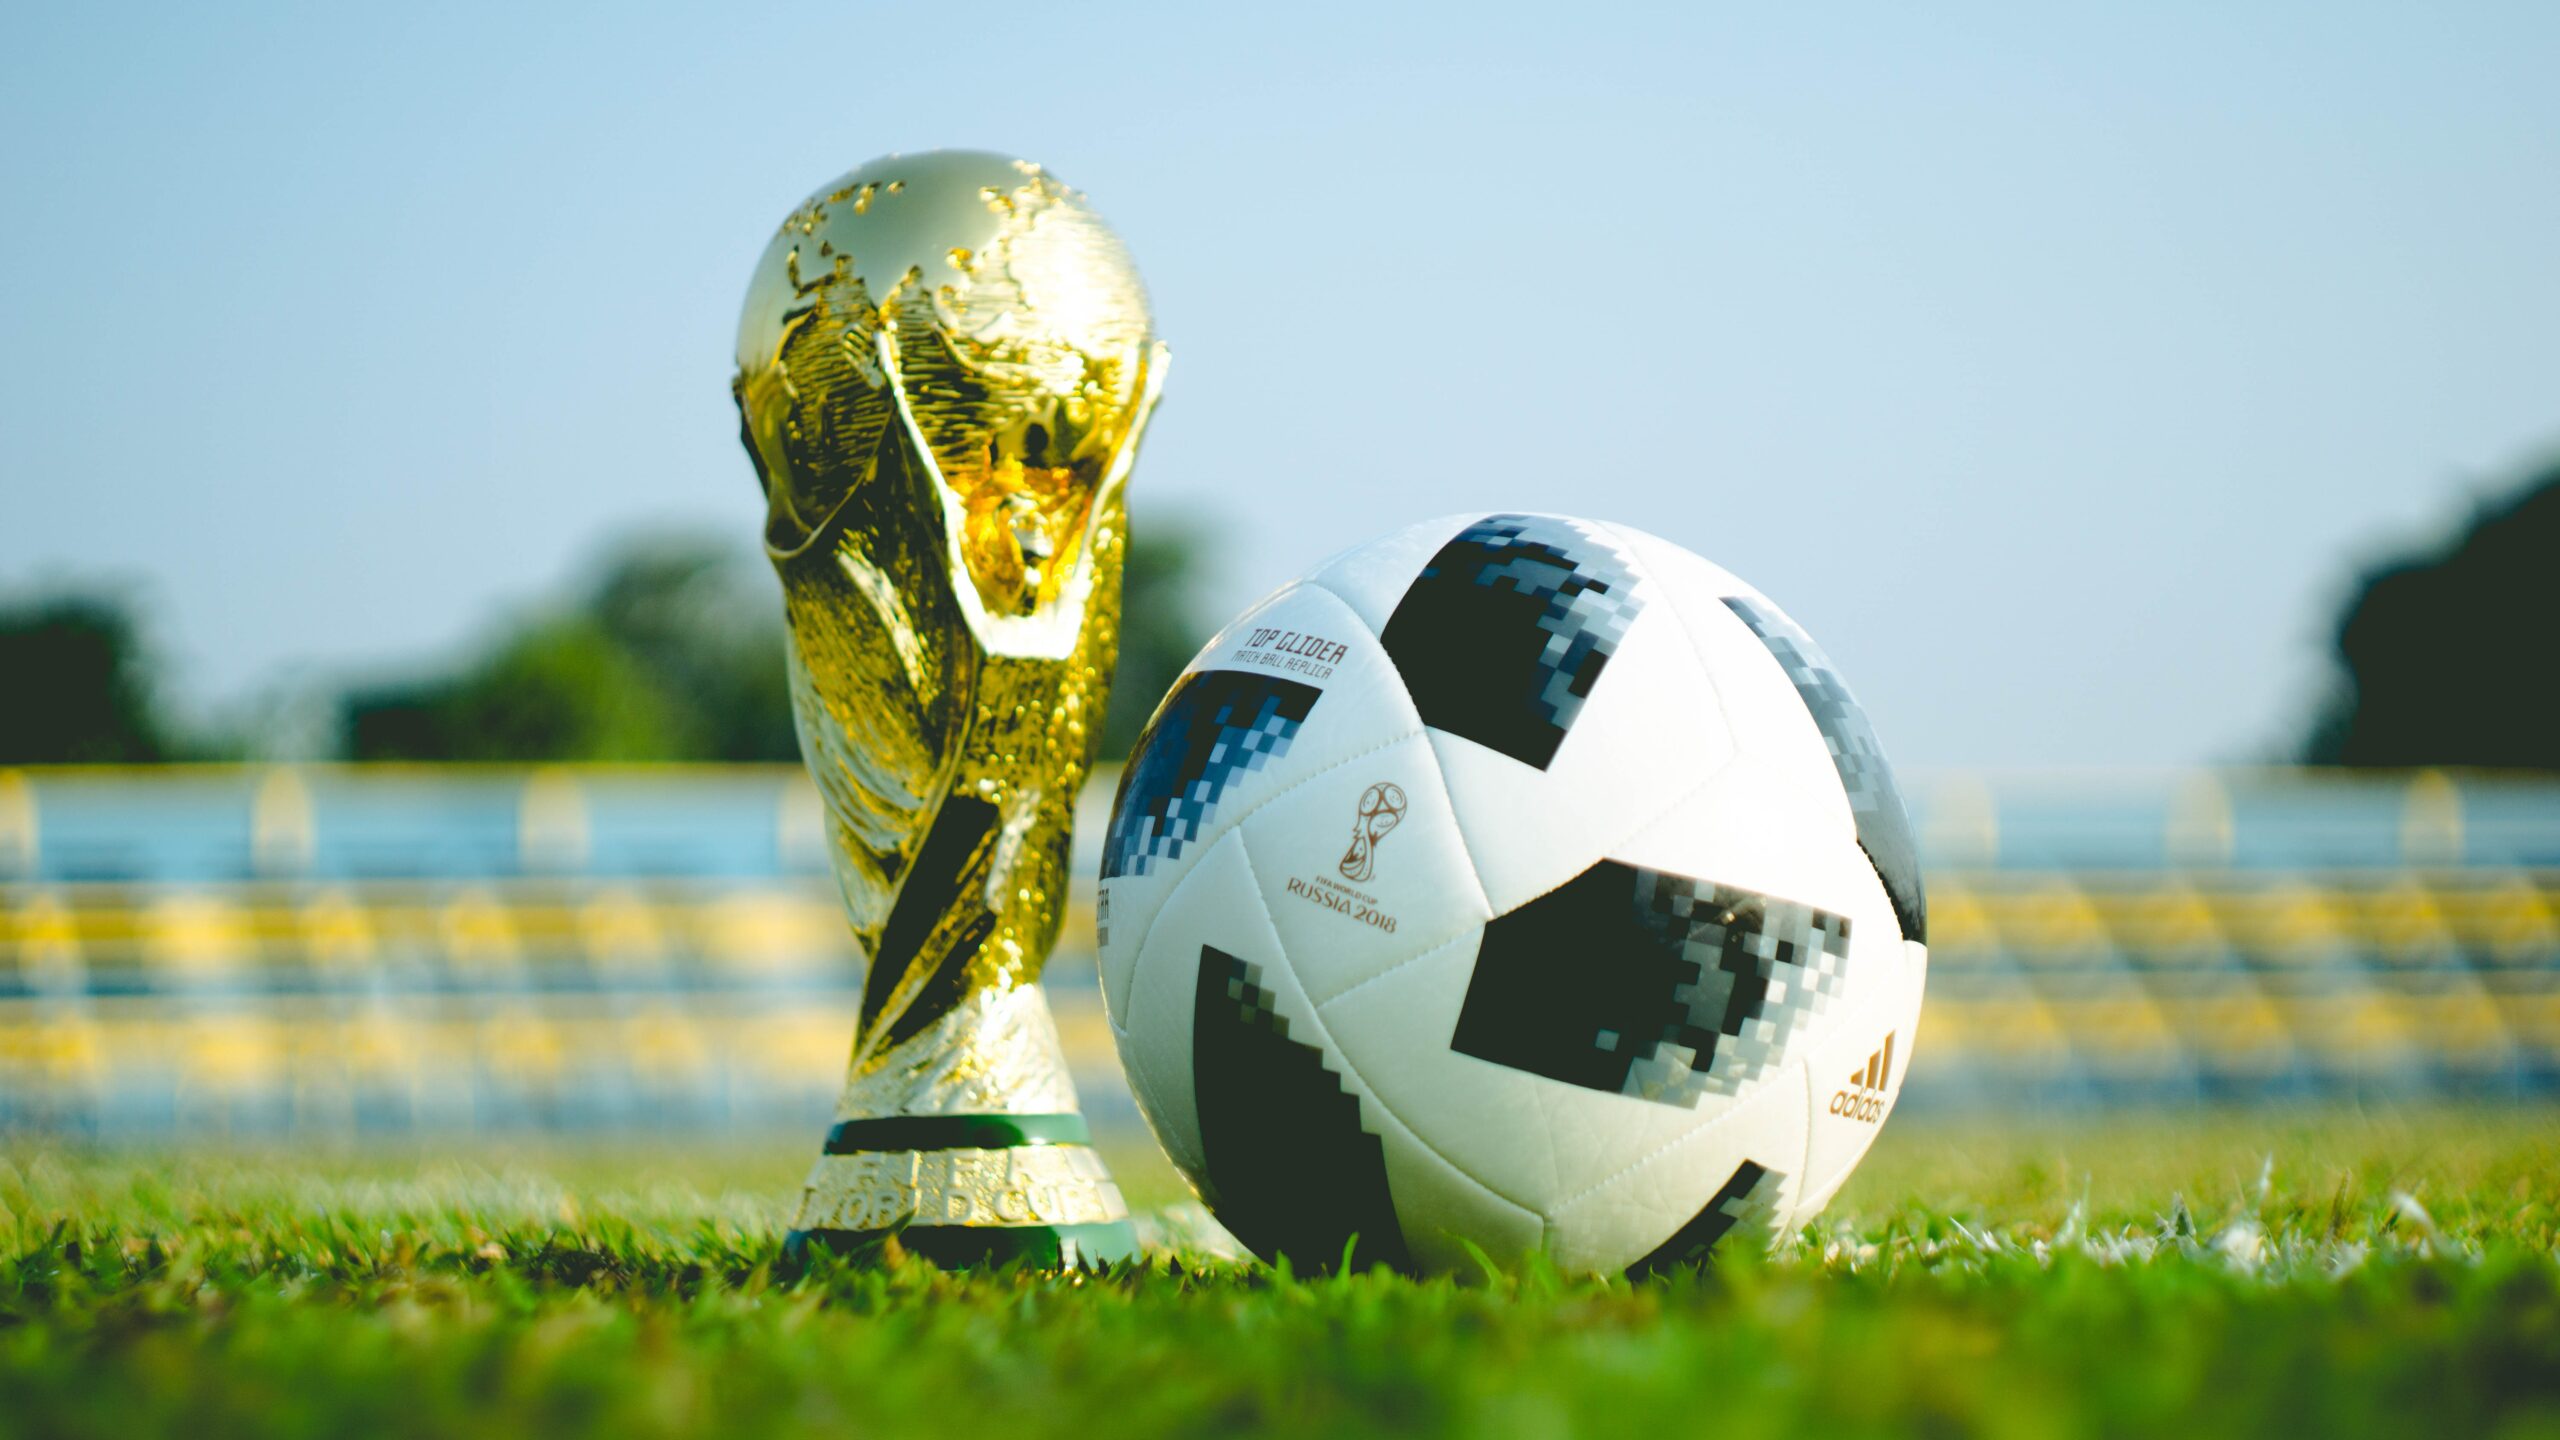 Chamadas dos jogos da Copa do Mundo 2018 na Globo 